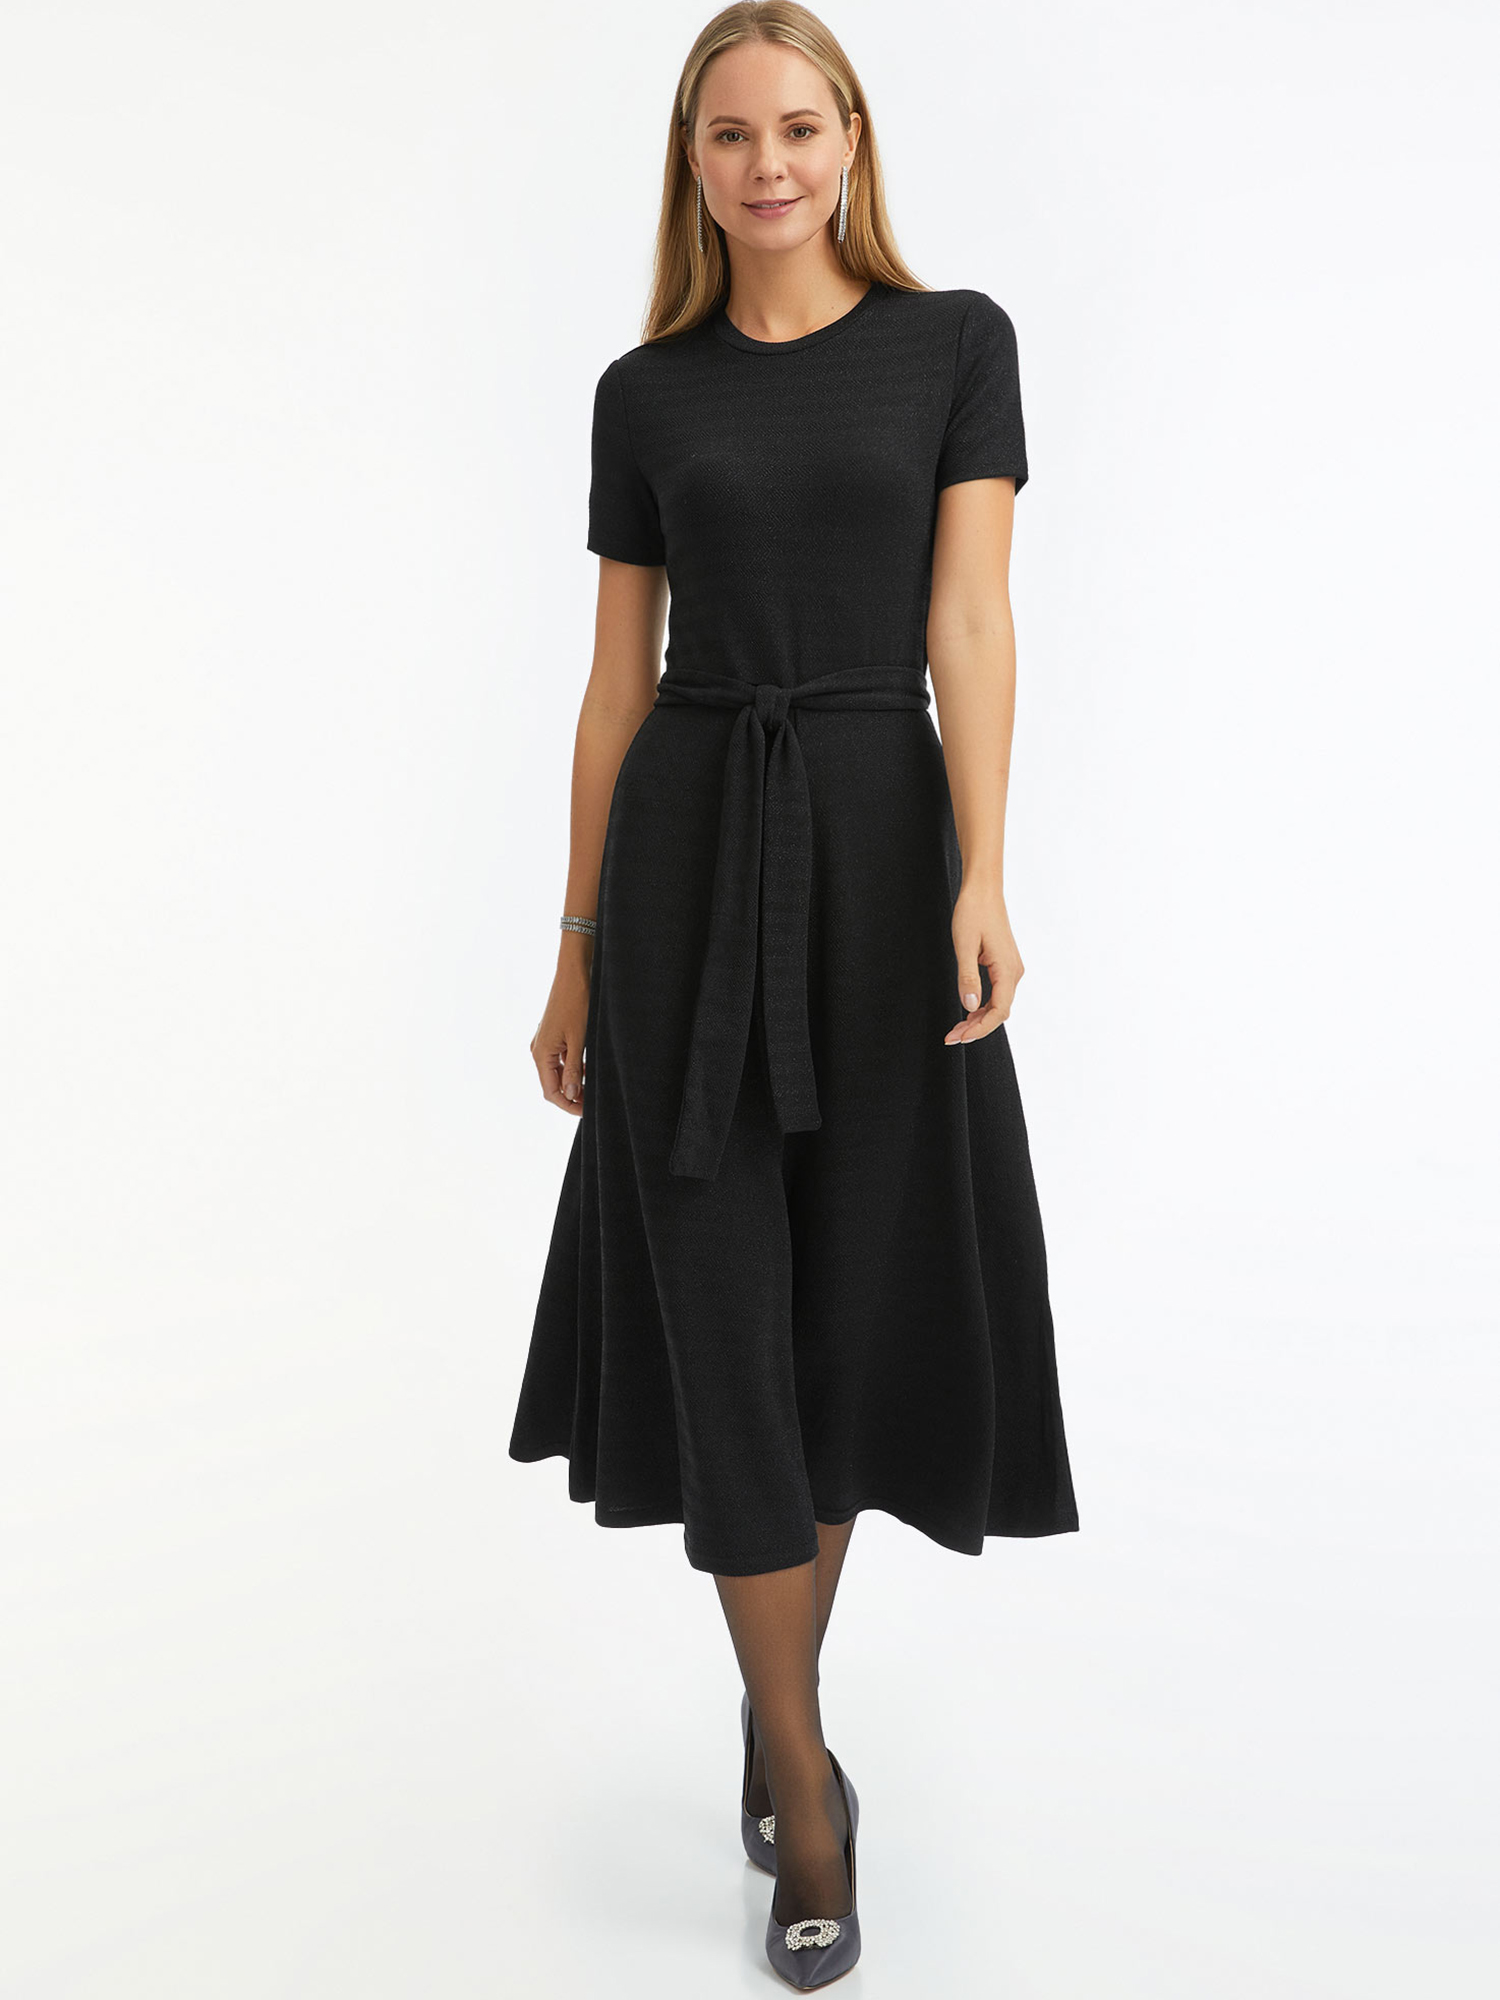 Платье женское oodji 14011090-2 черное L